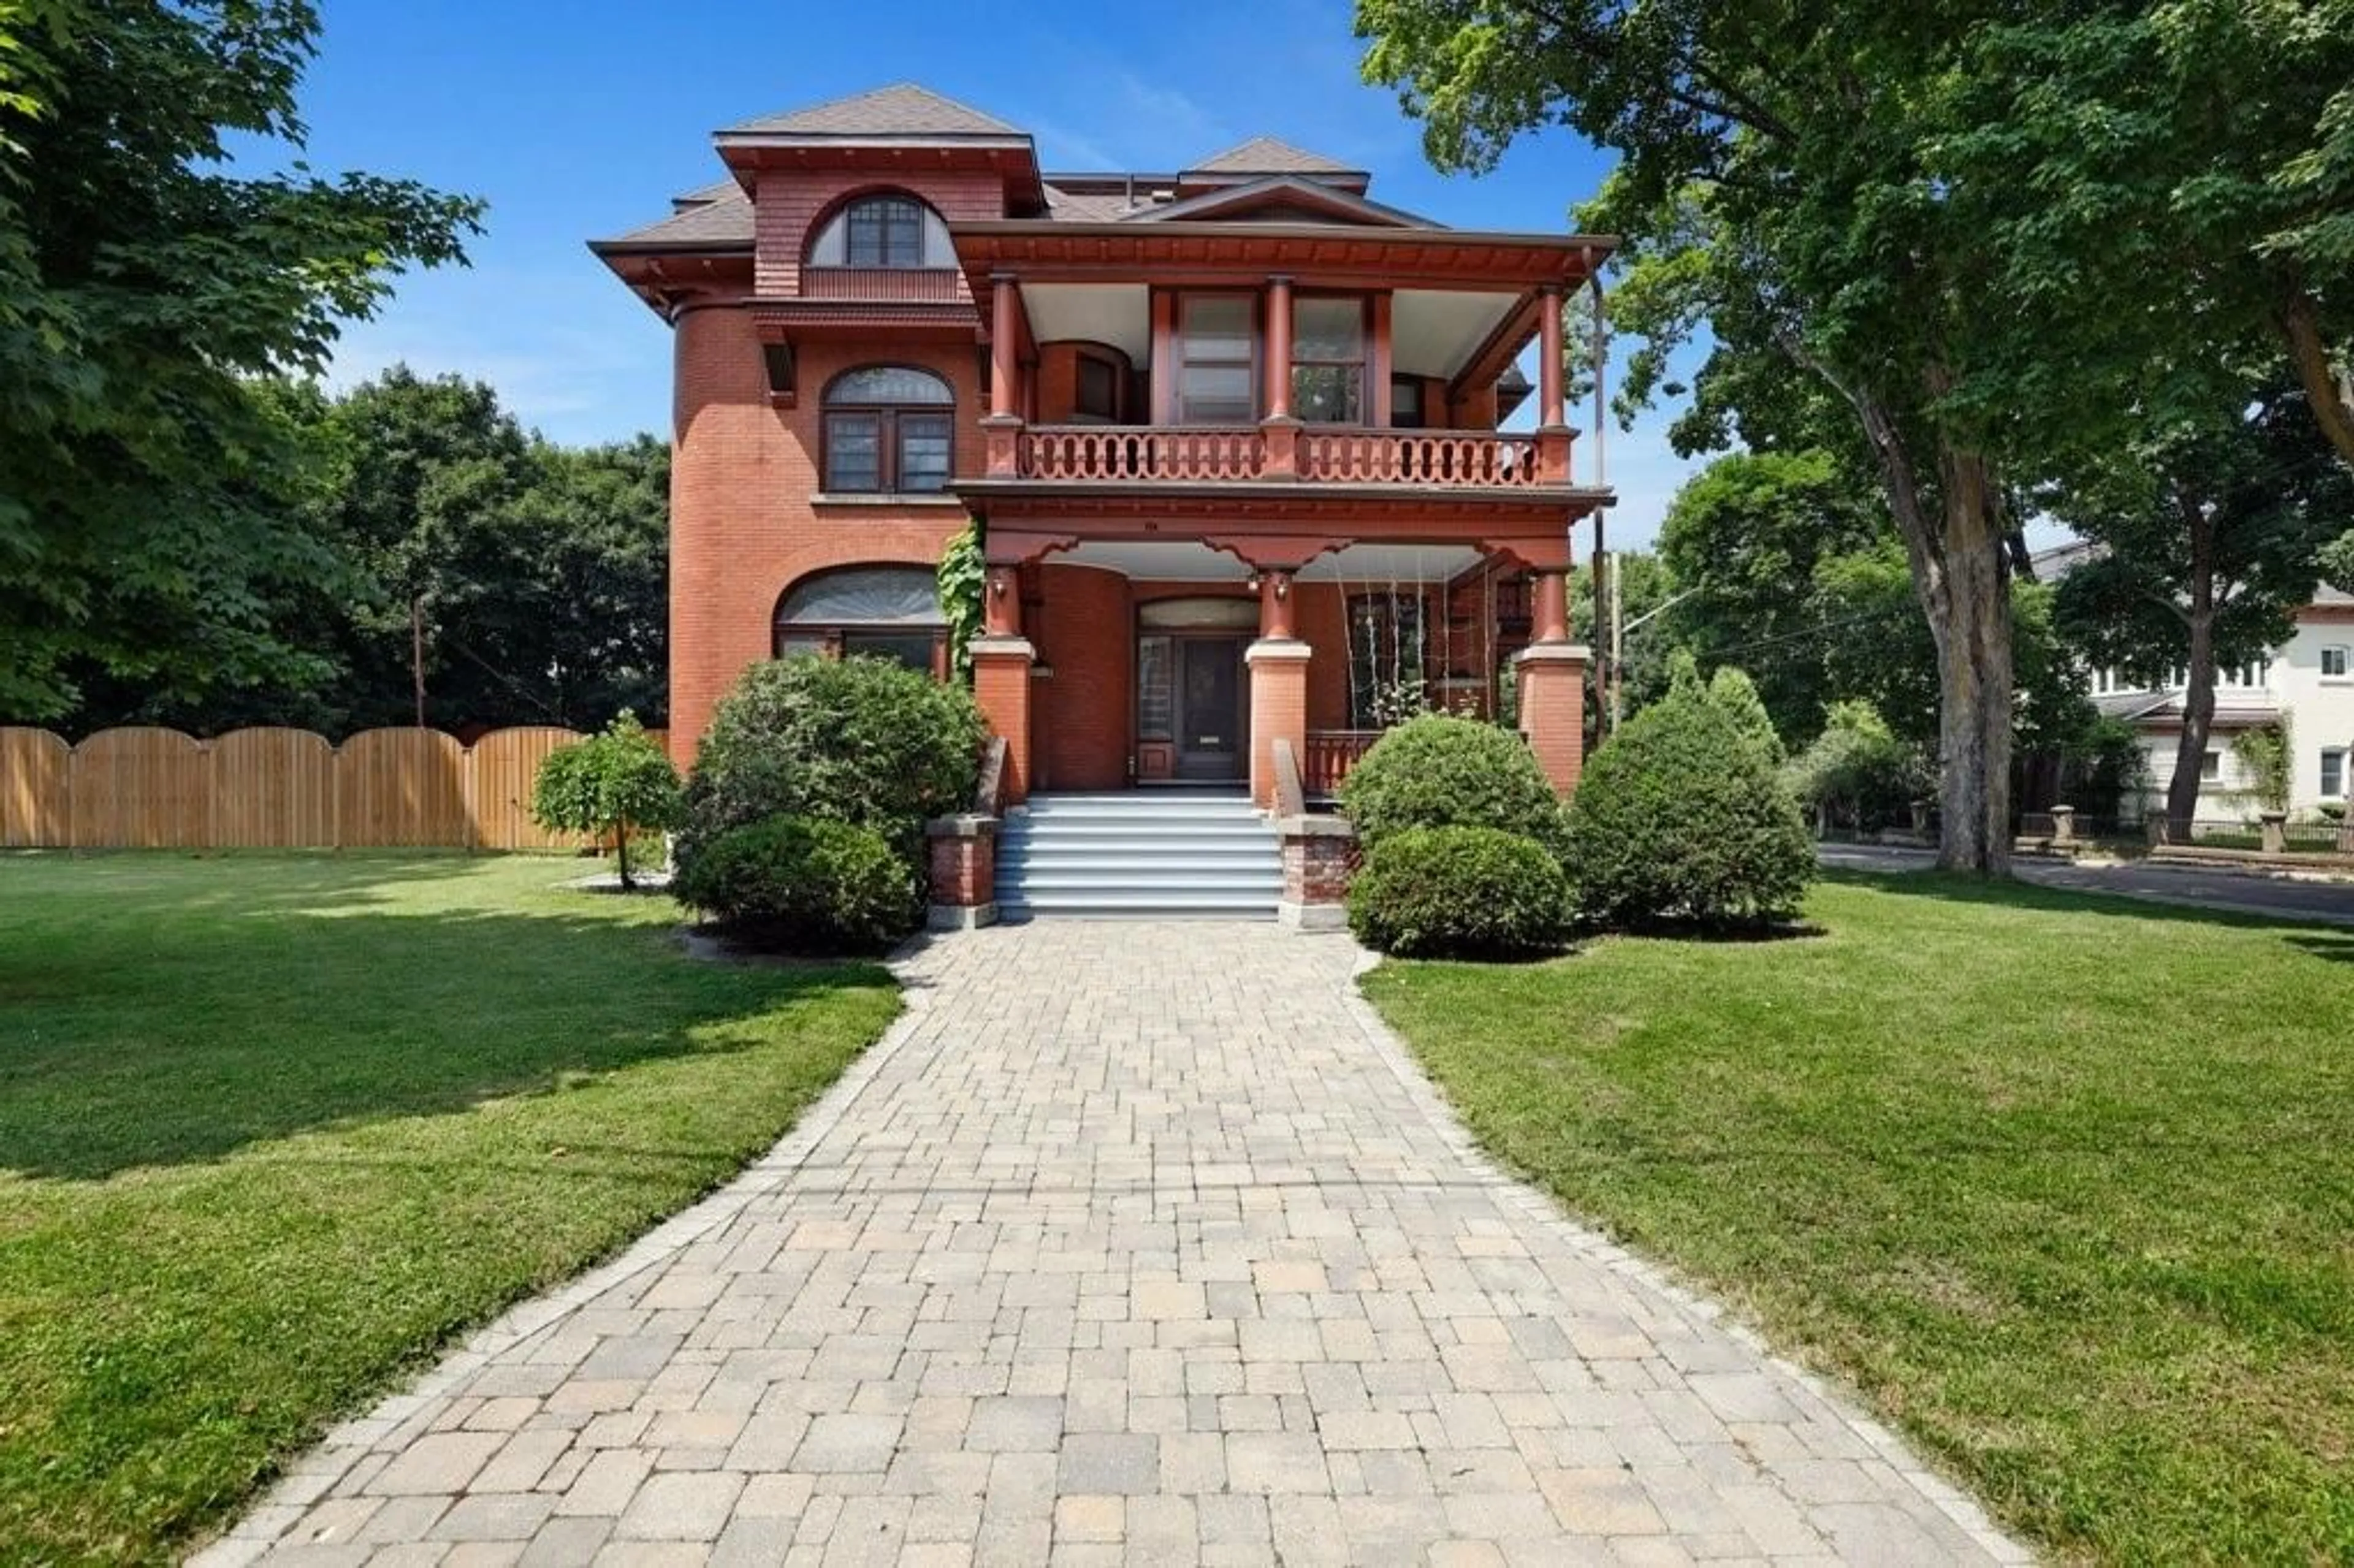 Home with brick exterior material for 154 QUARRY Ave, Renfrew Ontario K7V 2W4